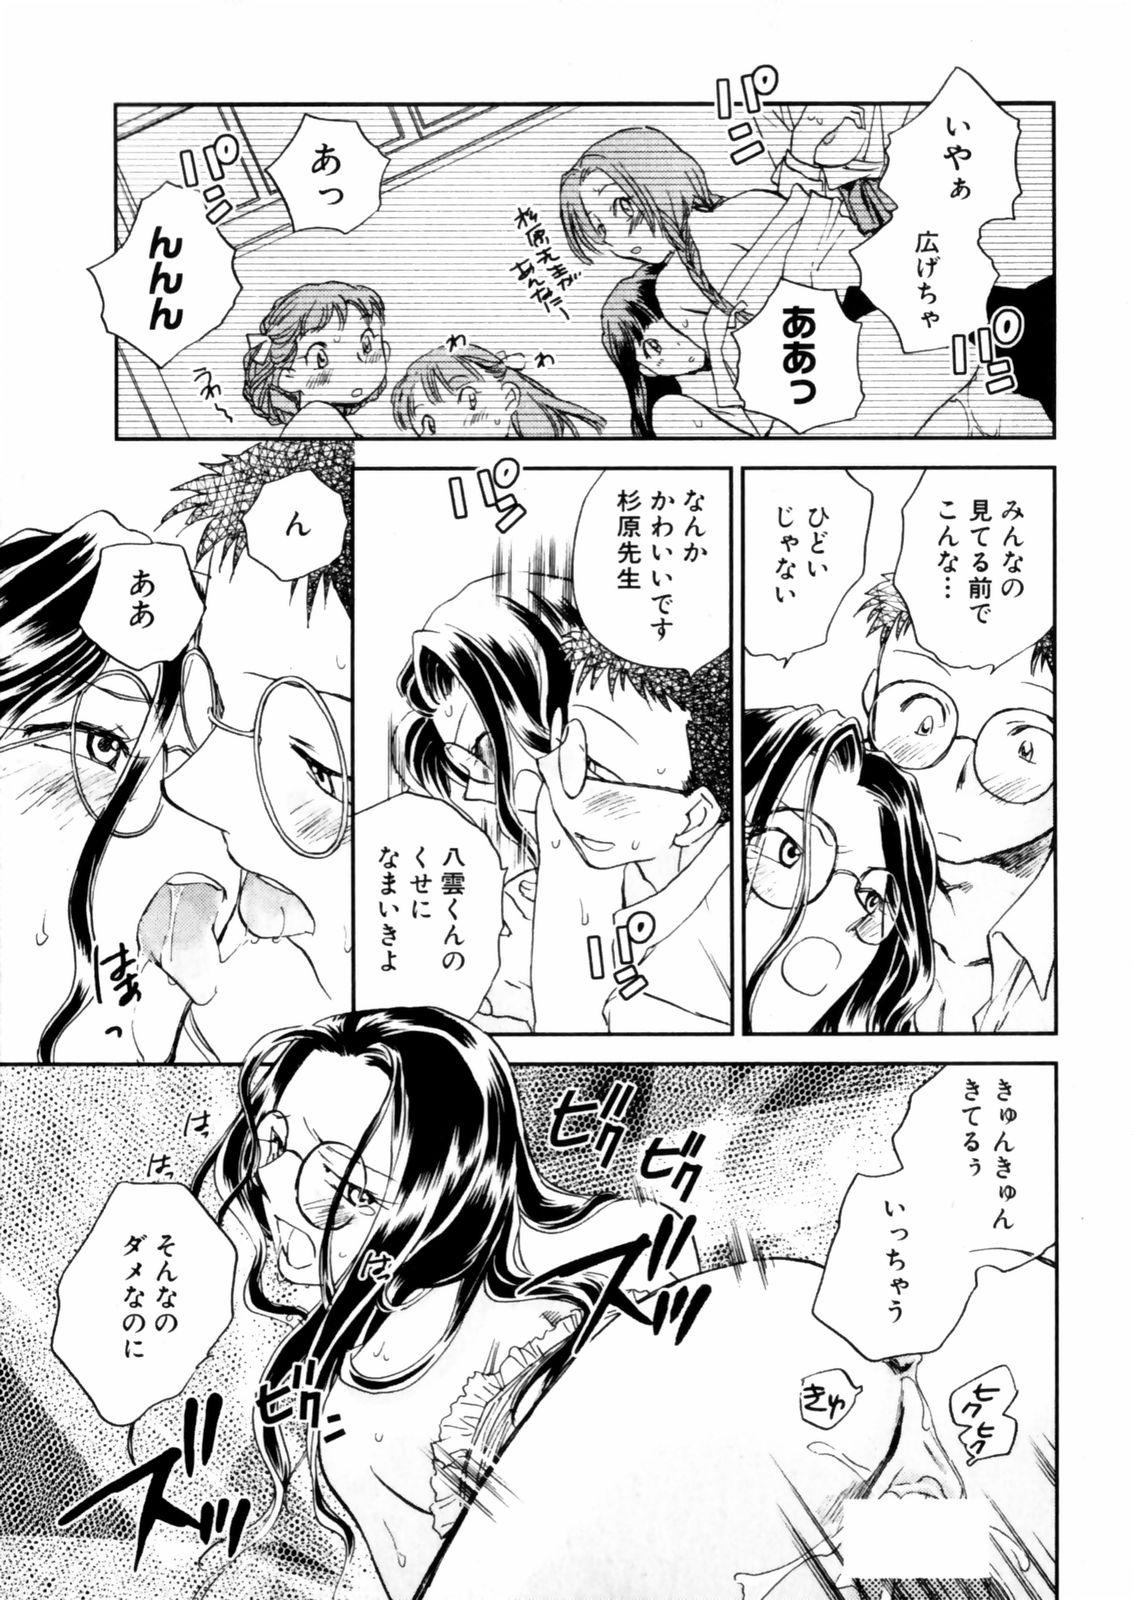 [Okano Ahiru] Hanasake ! Otome Juku (Otome Private Tutoring School) Vol.2 82